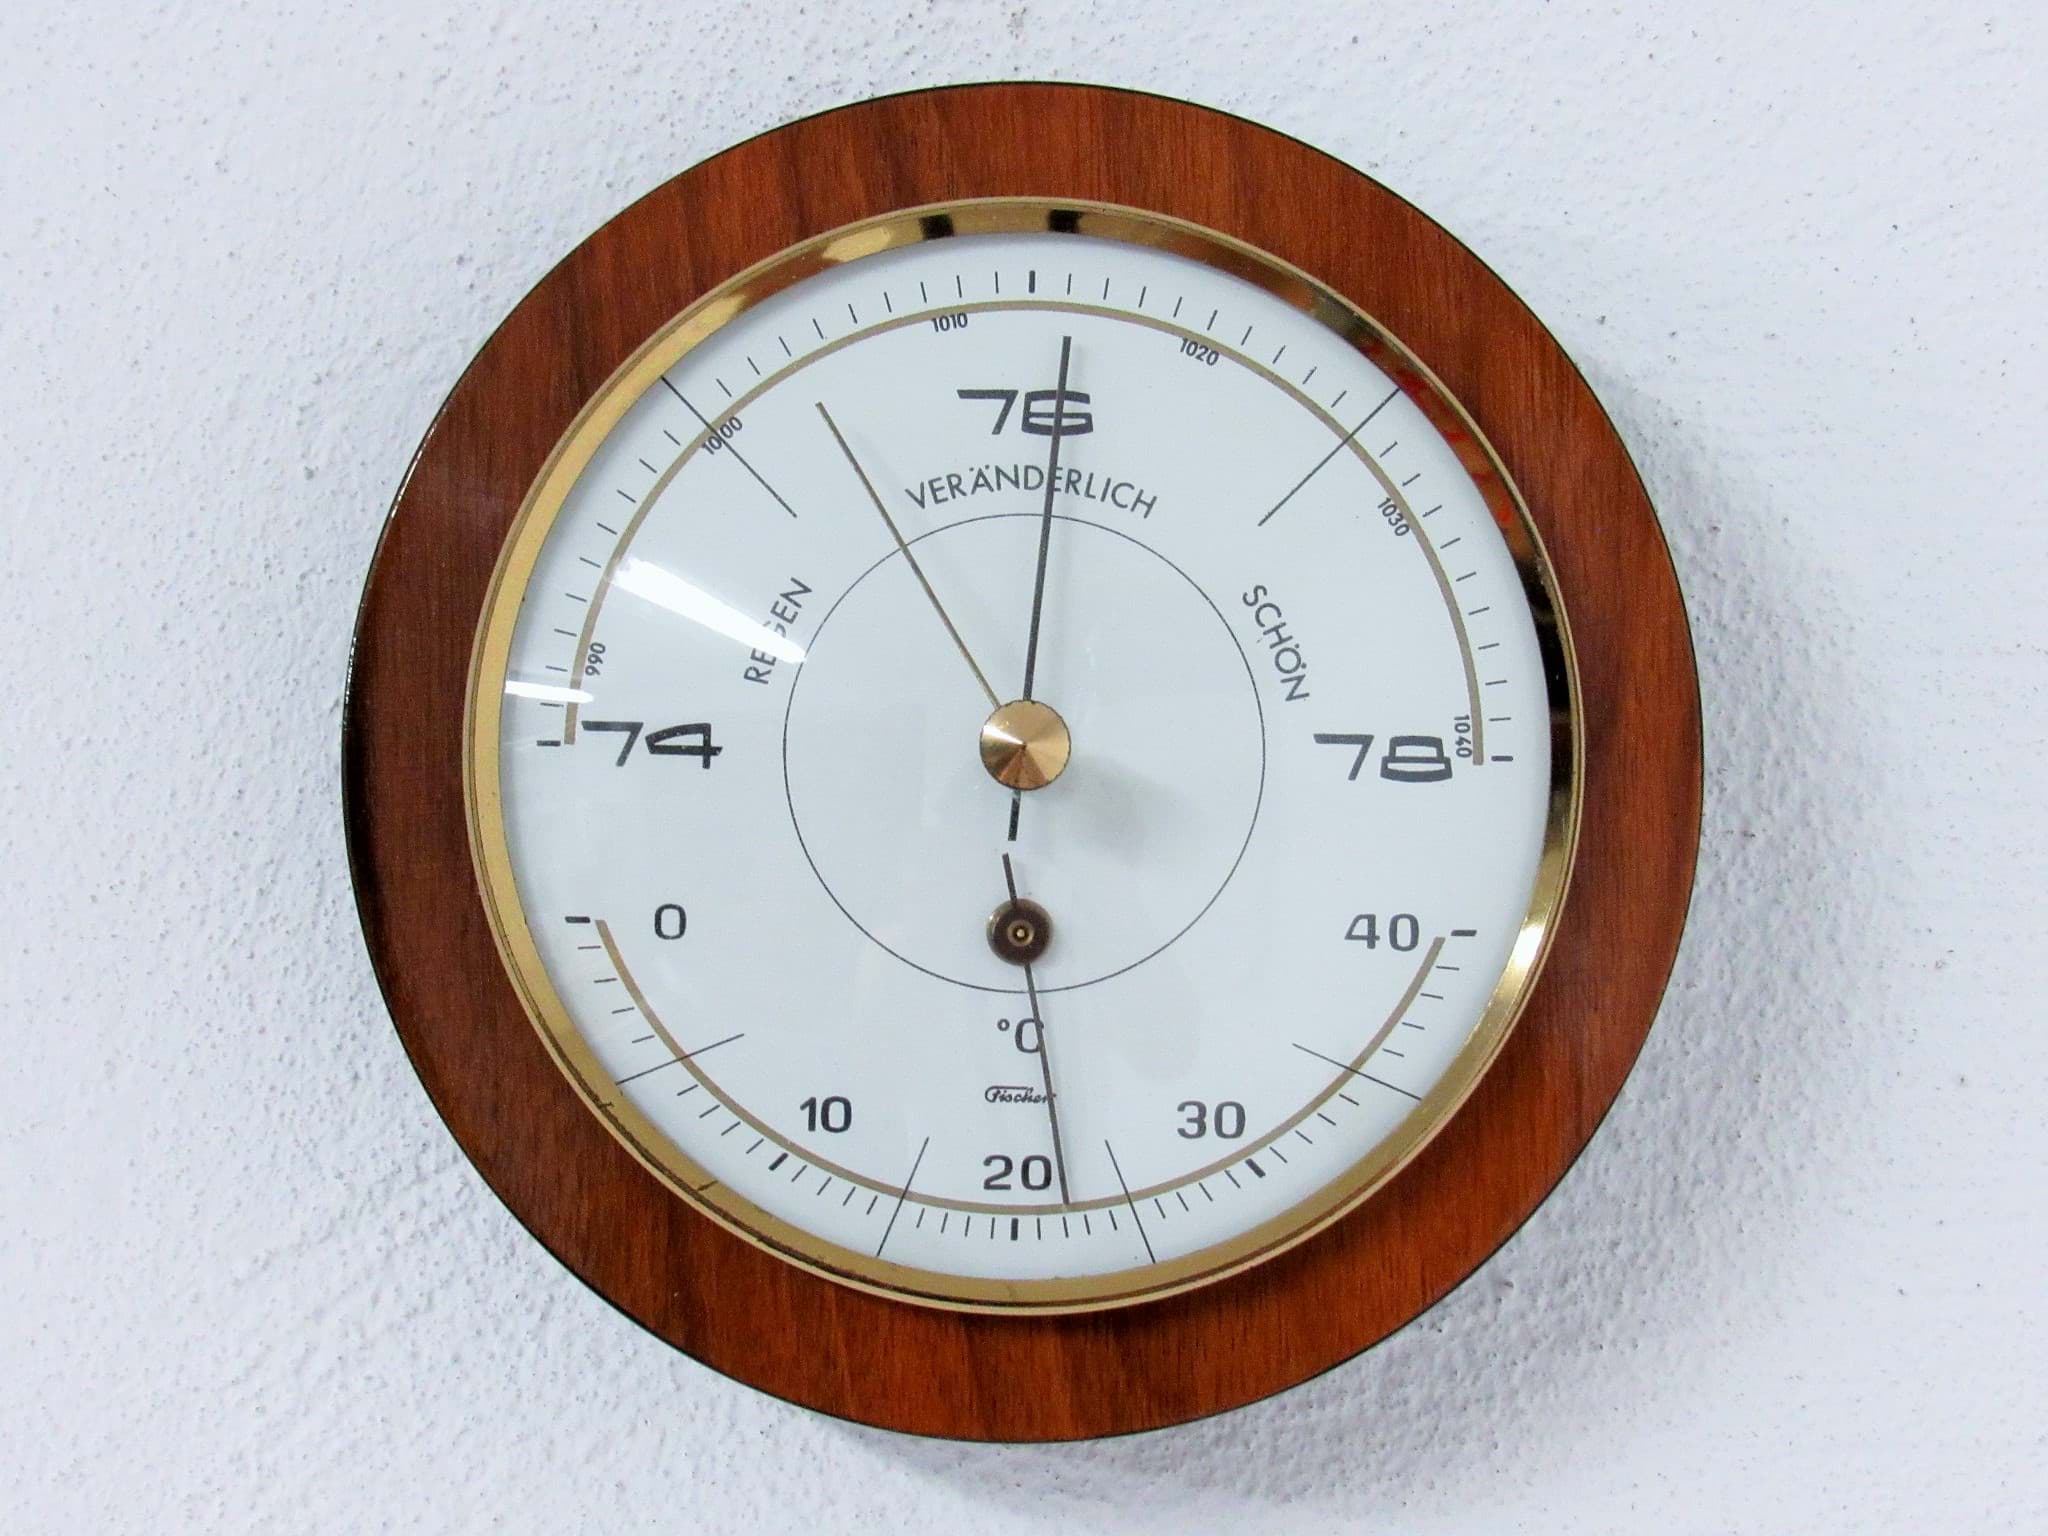 Image de Runde Wetterstation mit Barometer & Thermometer um 1960/70, wohl Palisander Holz, Hersteller Fischer